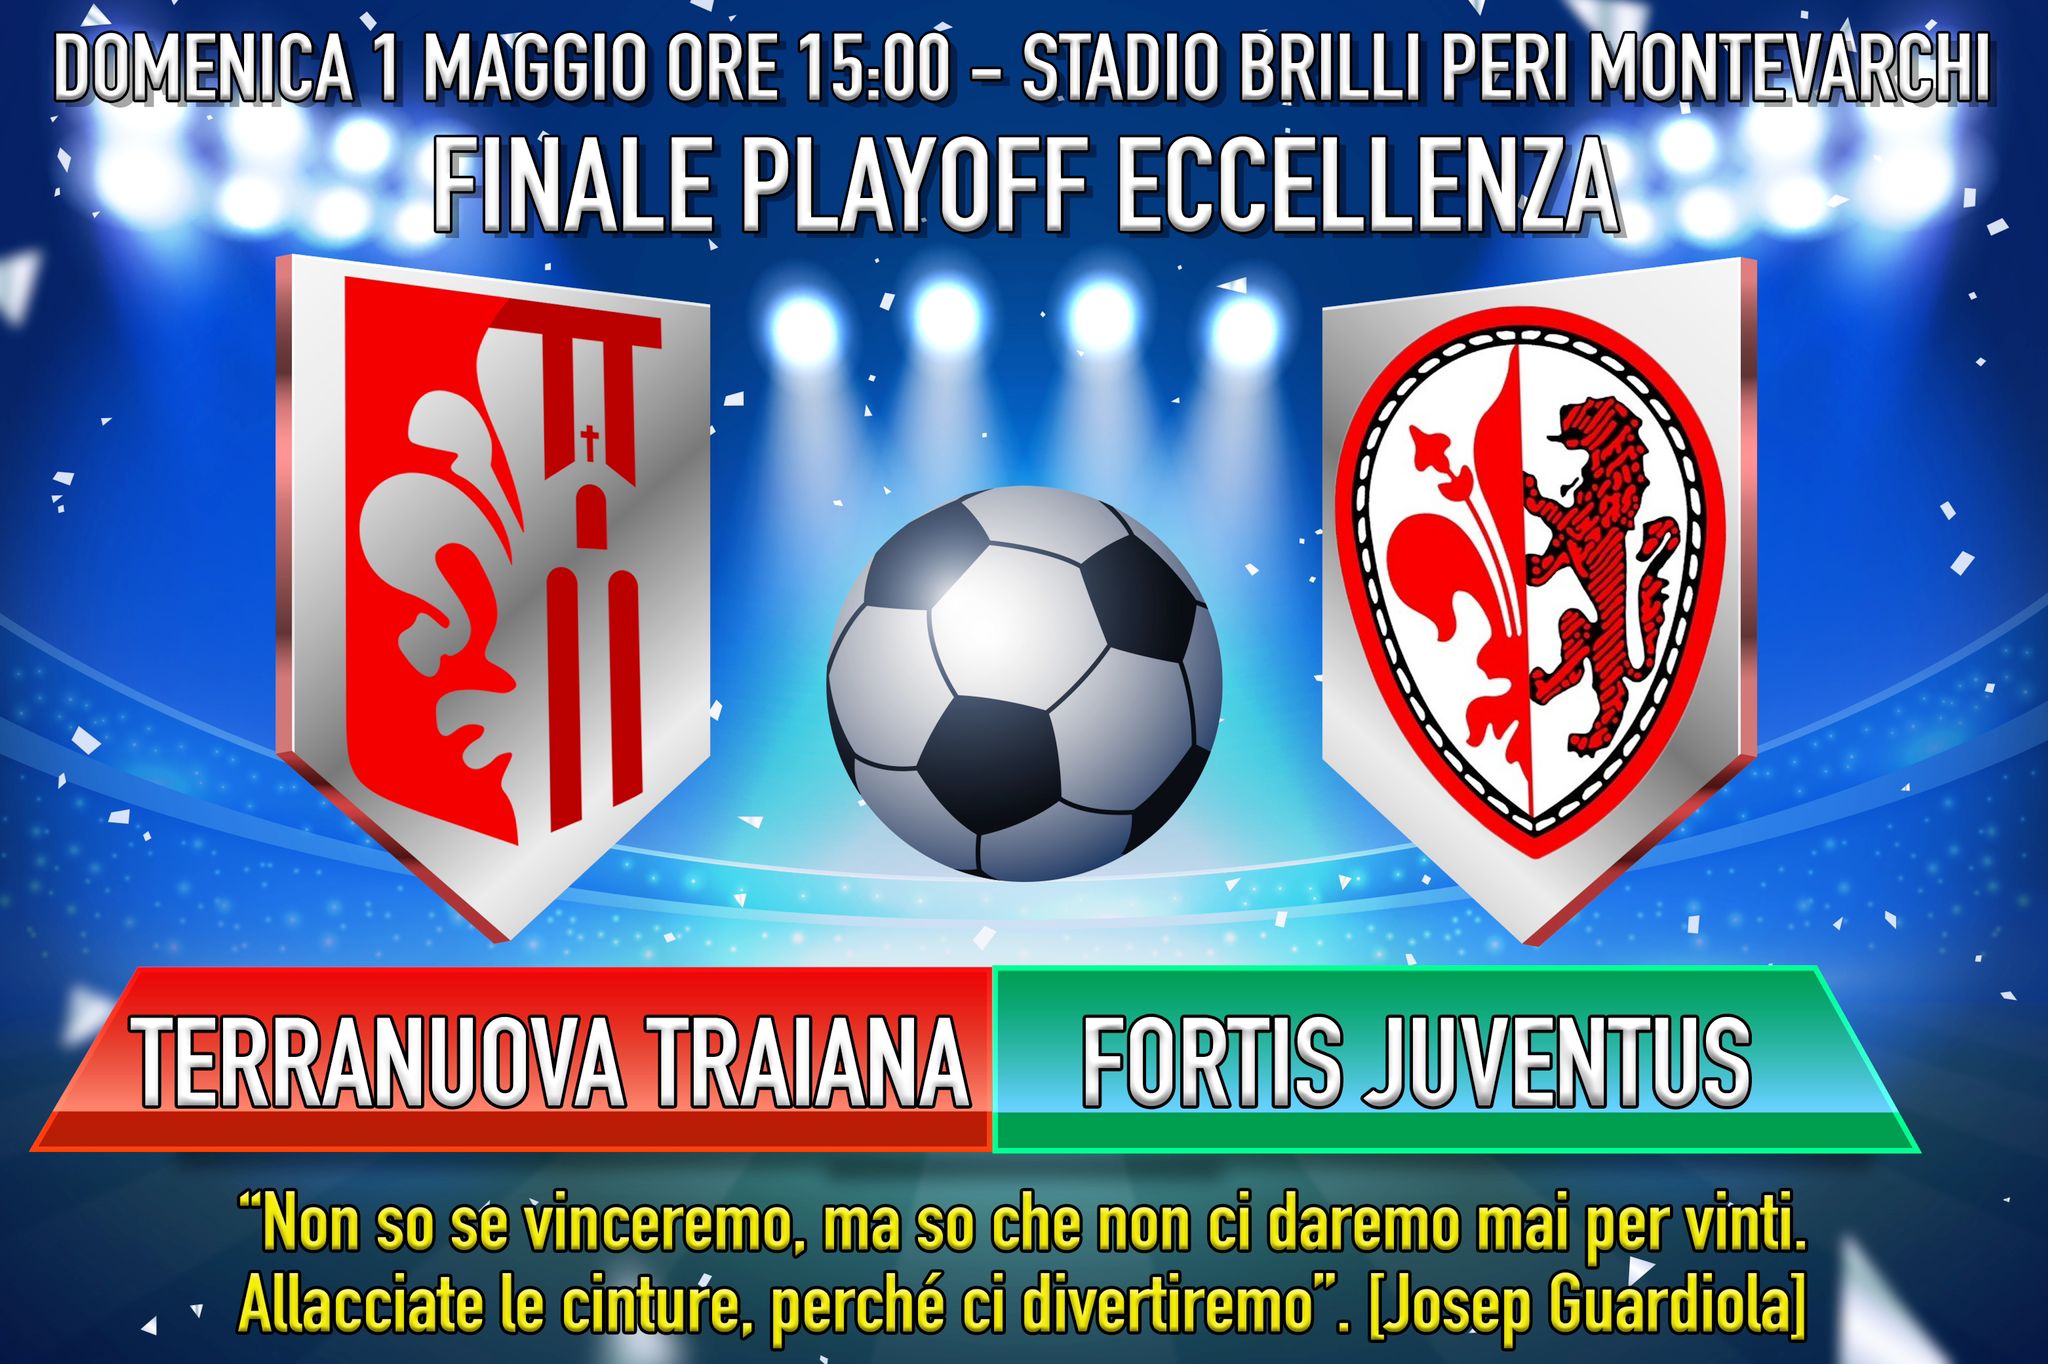 Domenica la finale playoff girone C campionato di Eccellenza. Terranuova Traiana vs. Fortis Juventus